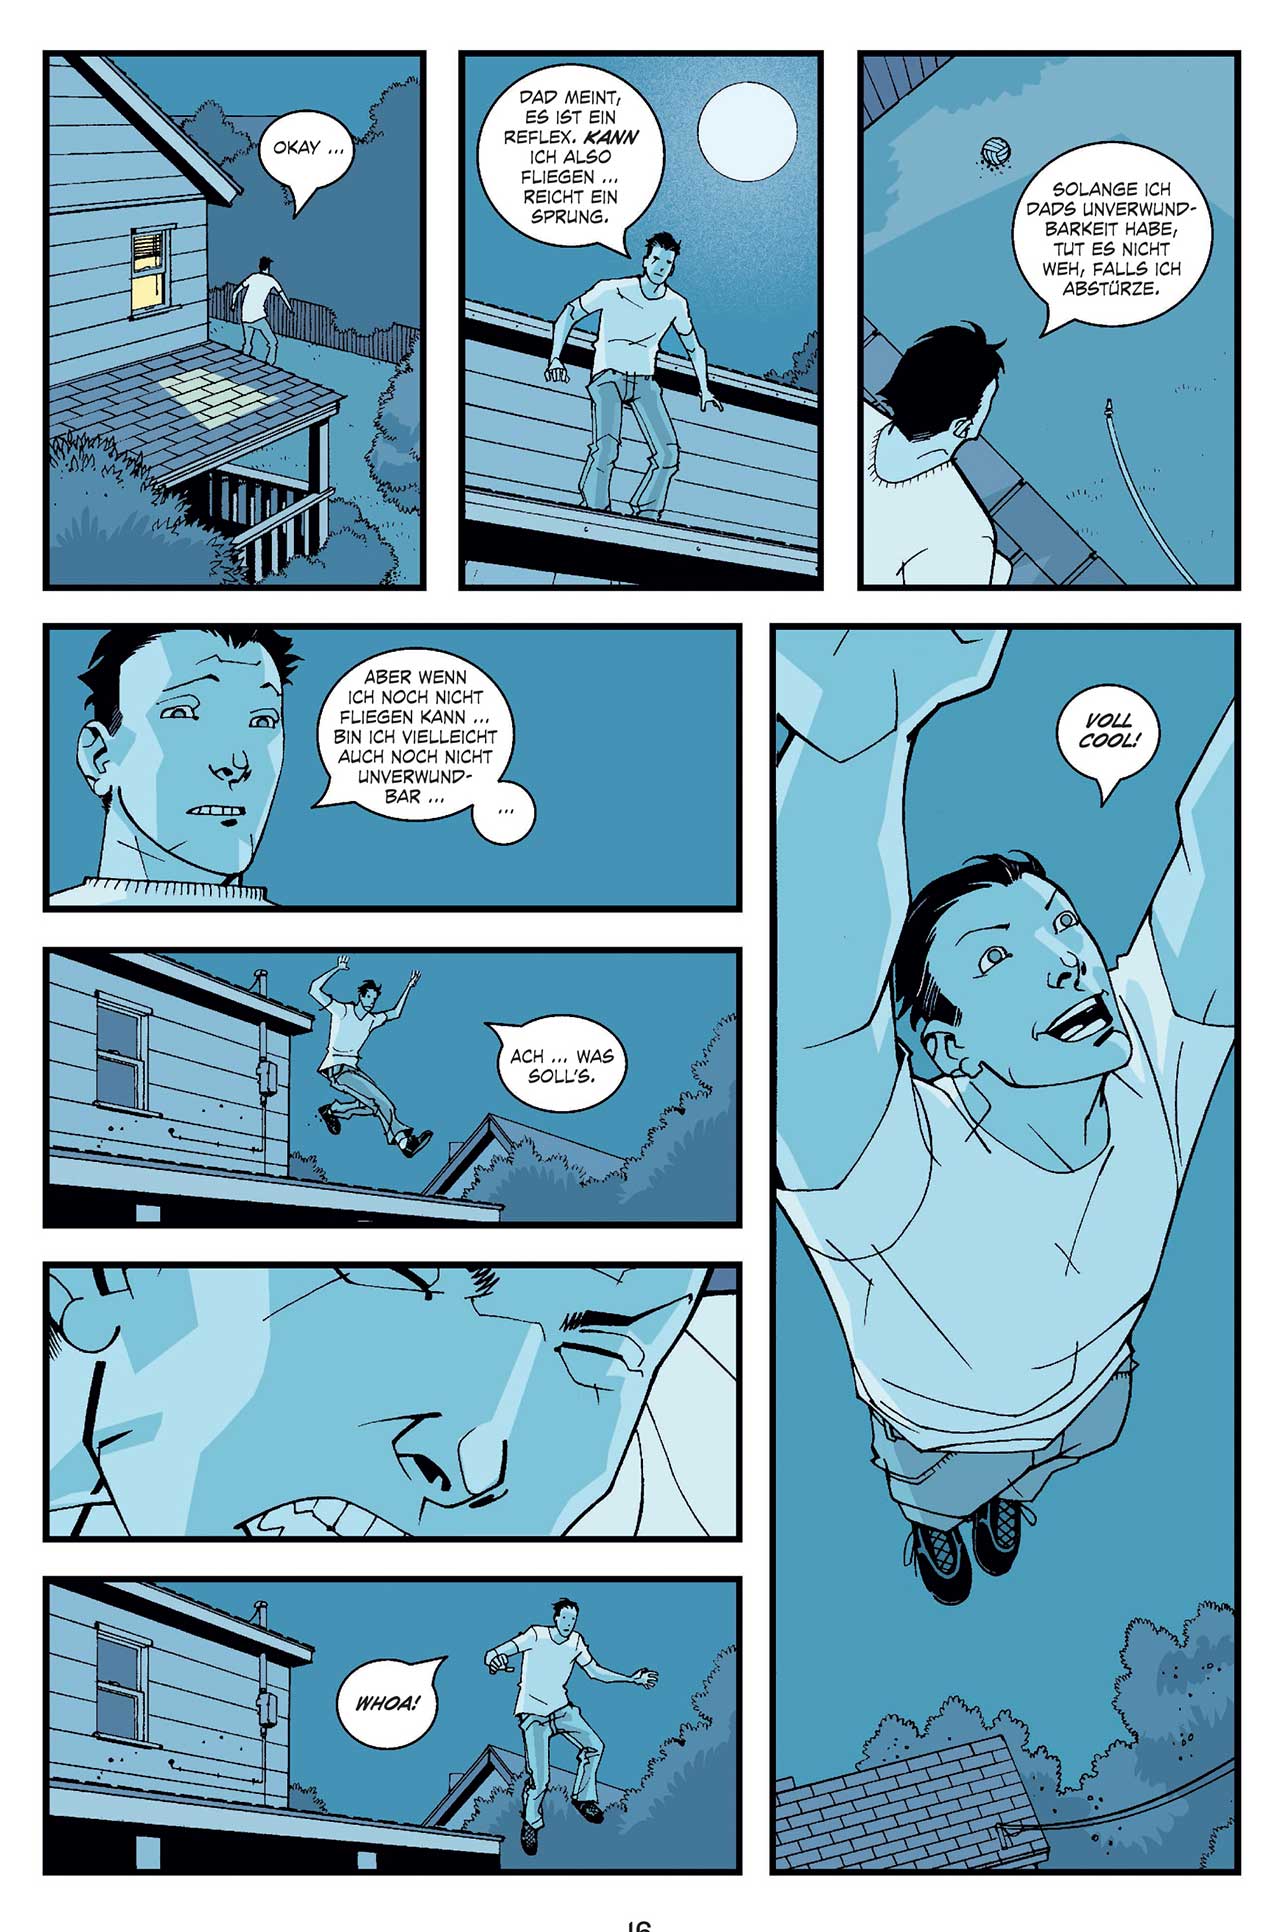 Gewinnt 3 Comic Sets Zum Serienstart Von Invincible Von Robert Kirkman Seriesly Awesome